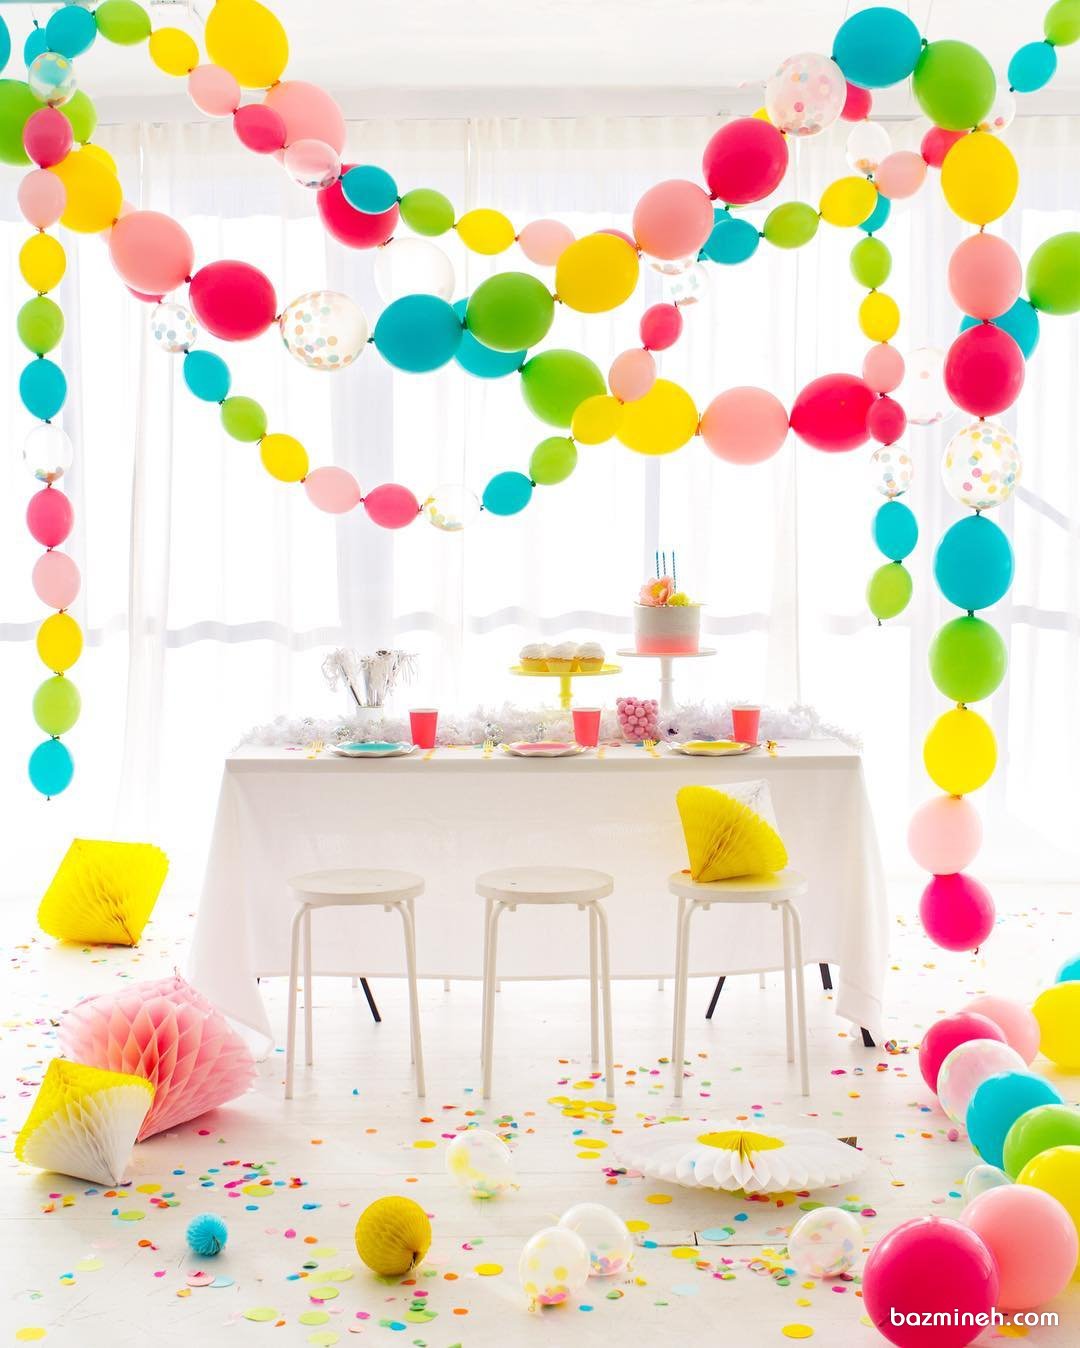 دکوراسیون ساده و زیبای جشن تولد کودک تزیین شده با بادکنک های رنگی